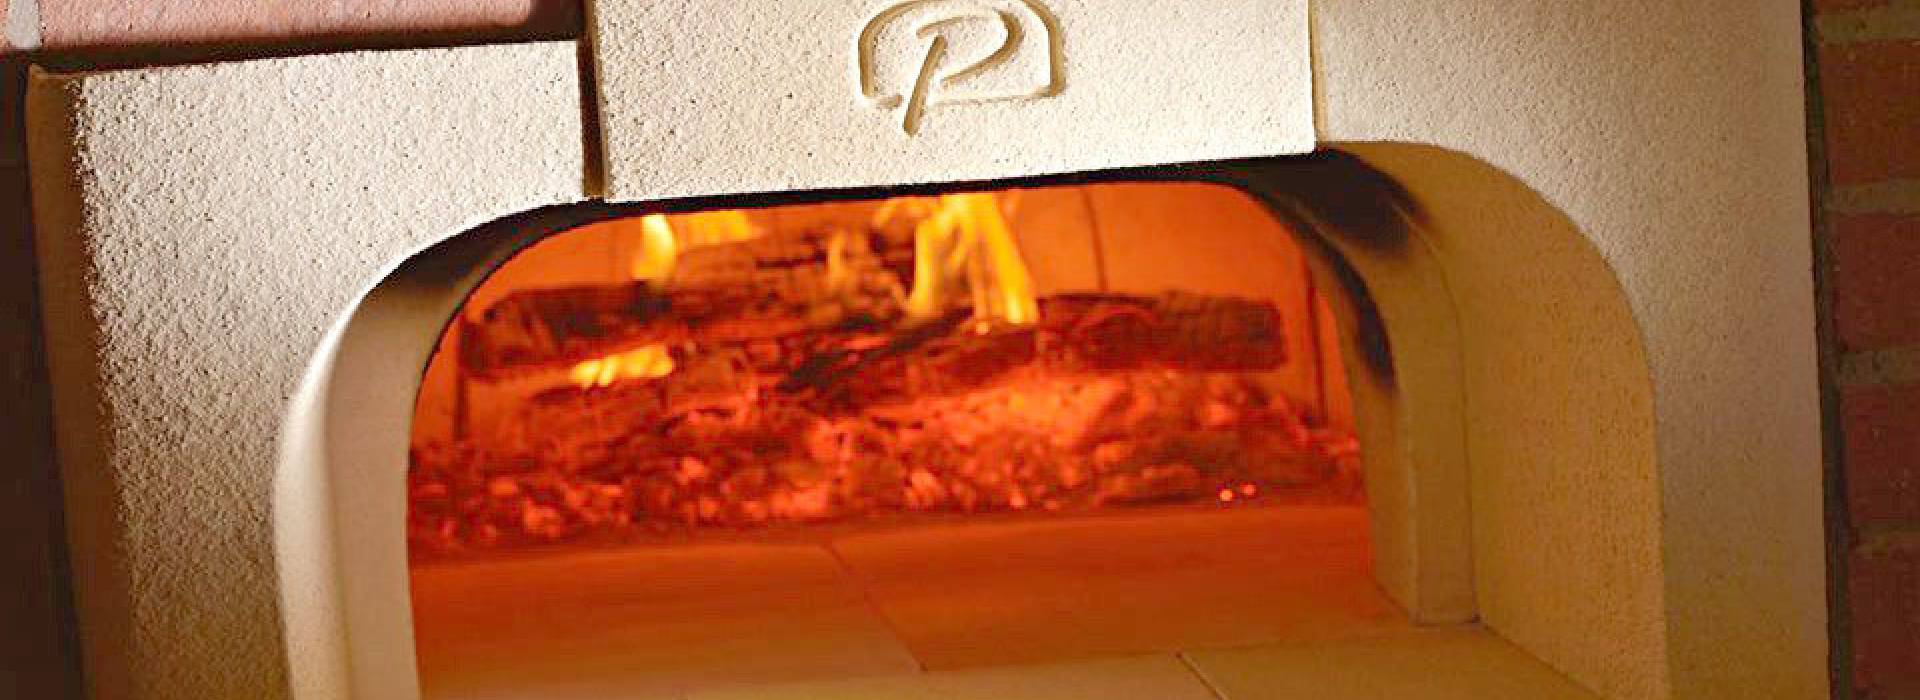 Pierre à pizza réfractaire artisanale pour four ou barbecue